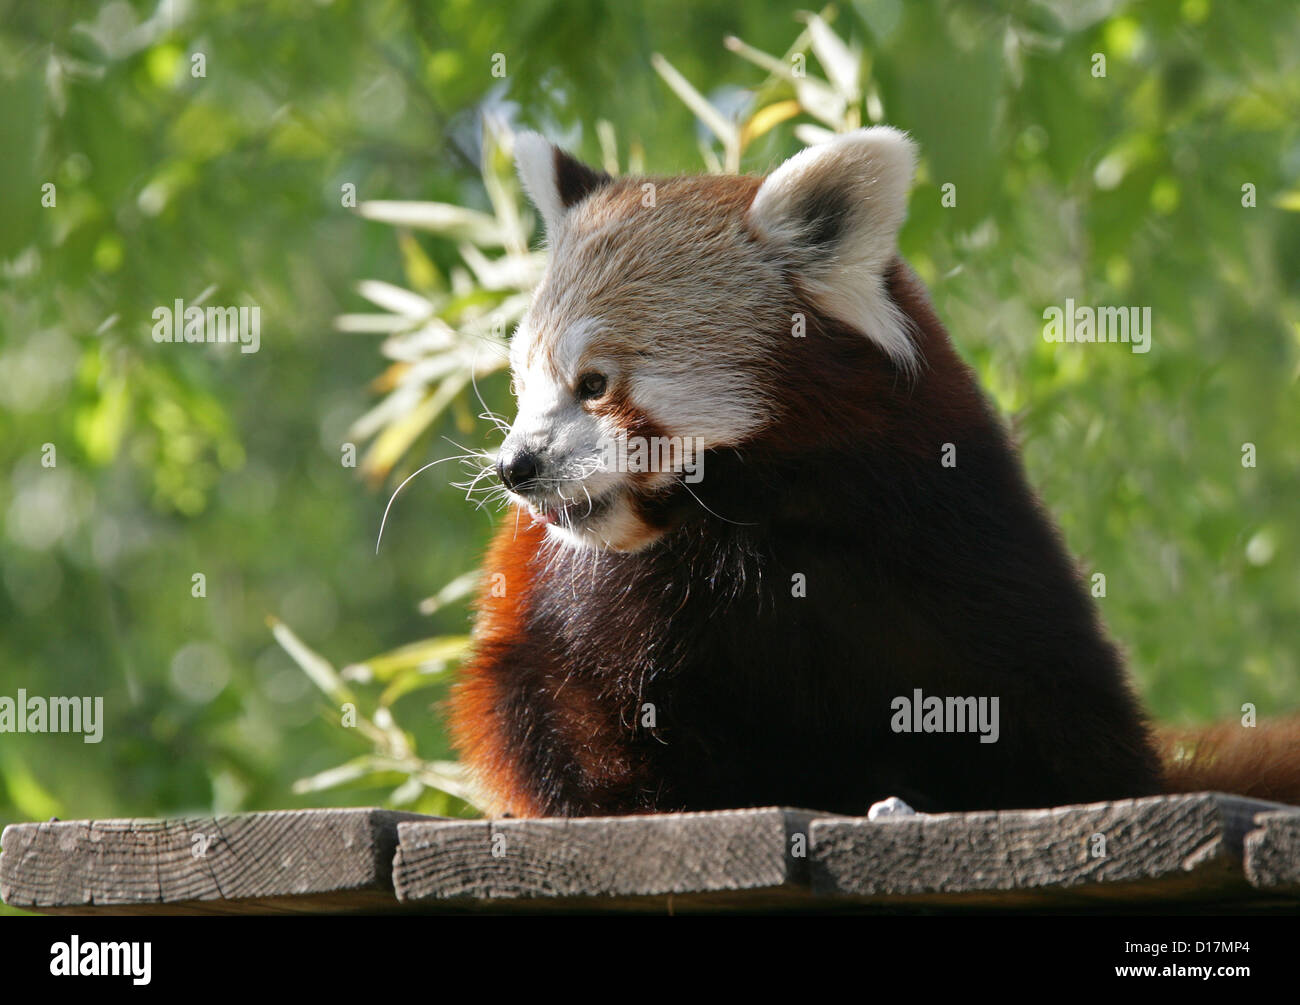 Le panda rouge, Ailurus fulgens, Ailuridae. Un petit mammifère arboricole originaire de l'Himalaya oriental et le sud-ouest de la Chine. Banque D'Images